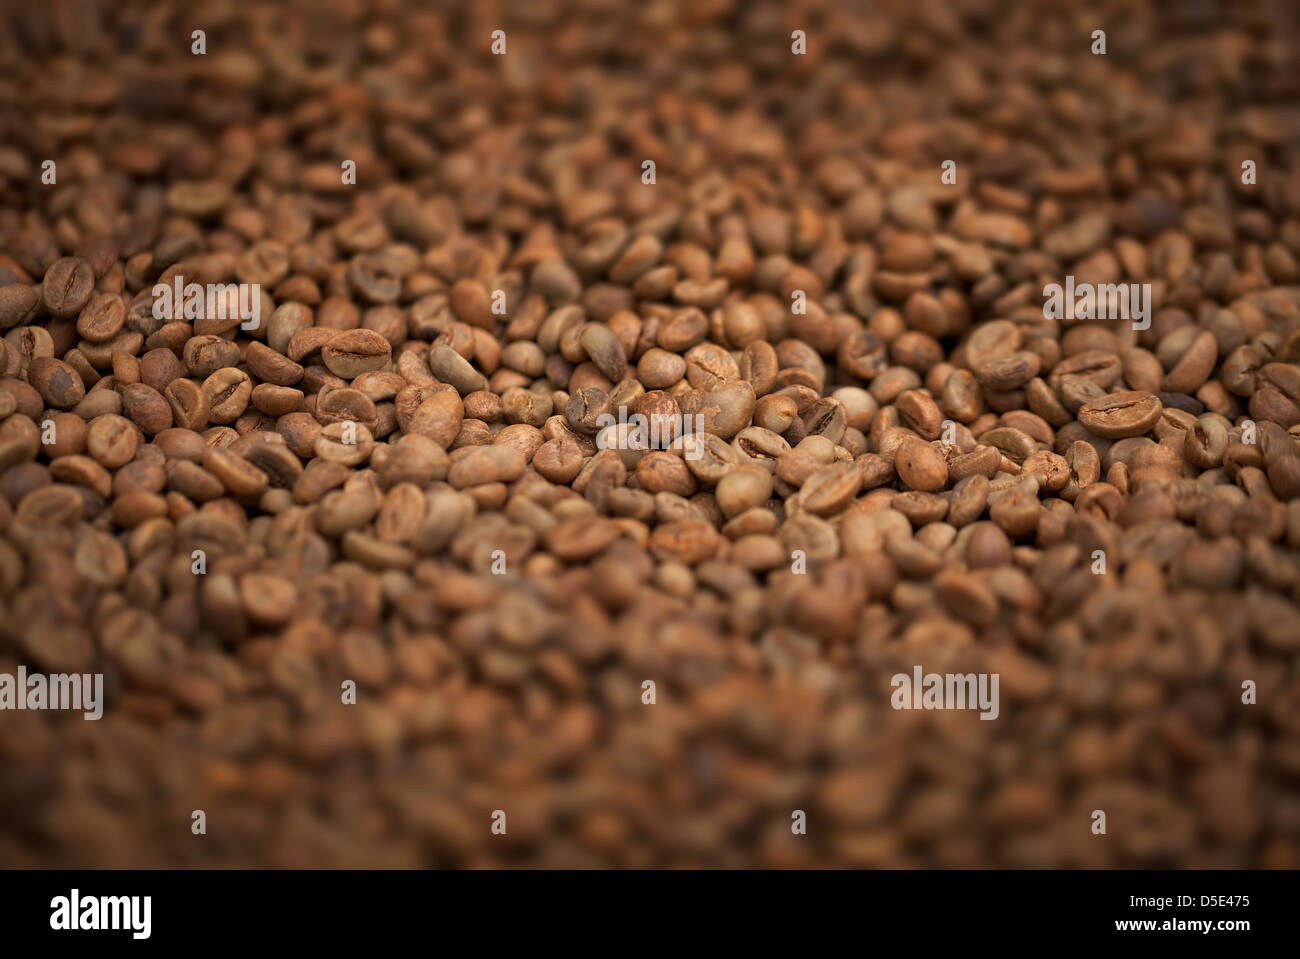 Les grains de café frais fried brown background close-up Banque D'Images